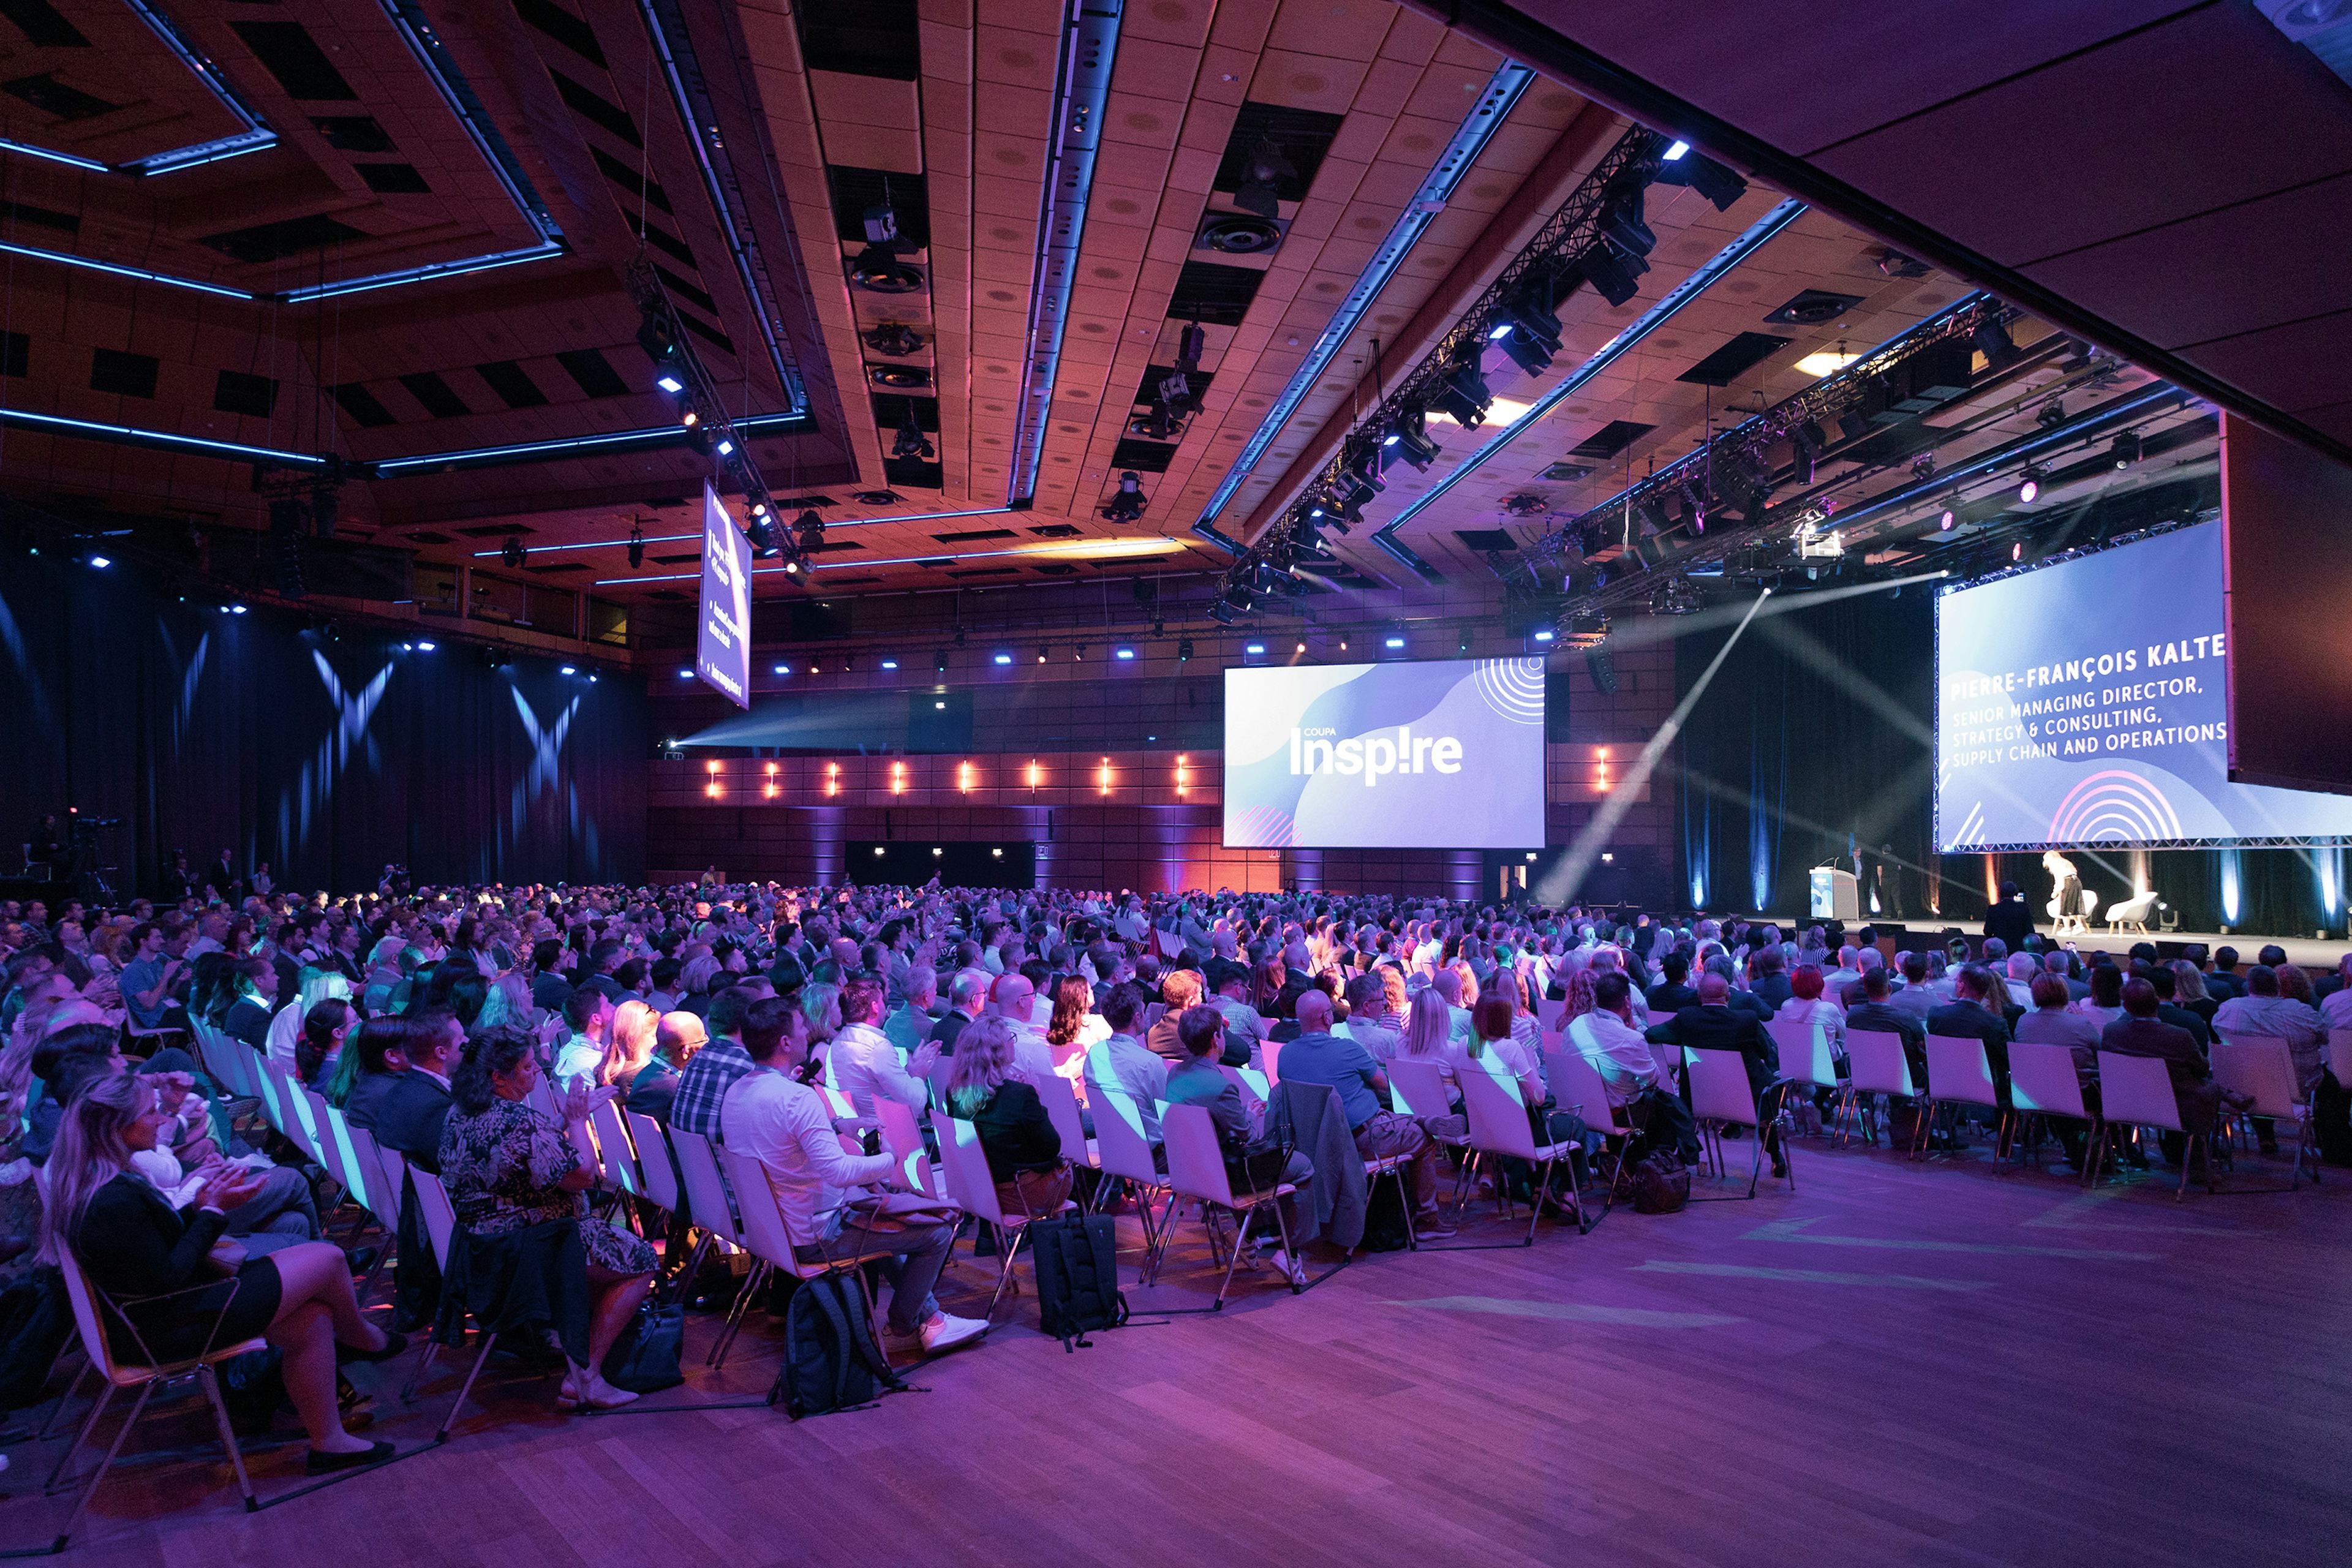 Sitzreihen voll Menschen blicken auf die Buehne von Saal A bei einem Corporate Event im Austria Center Vienna.